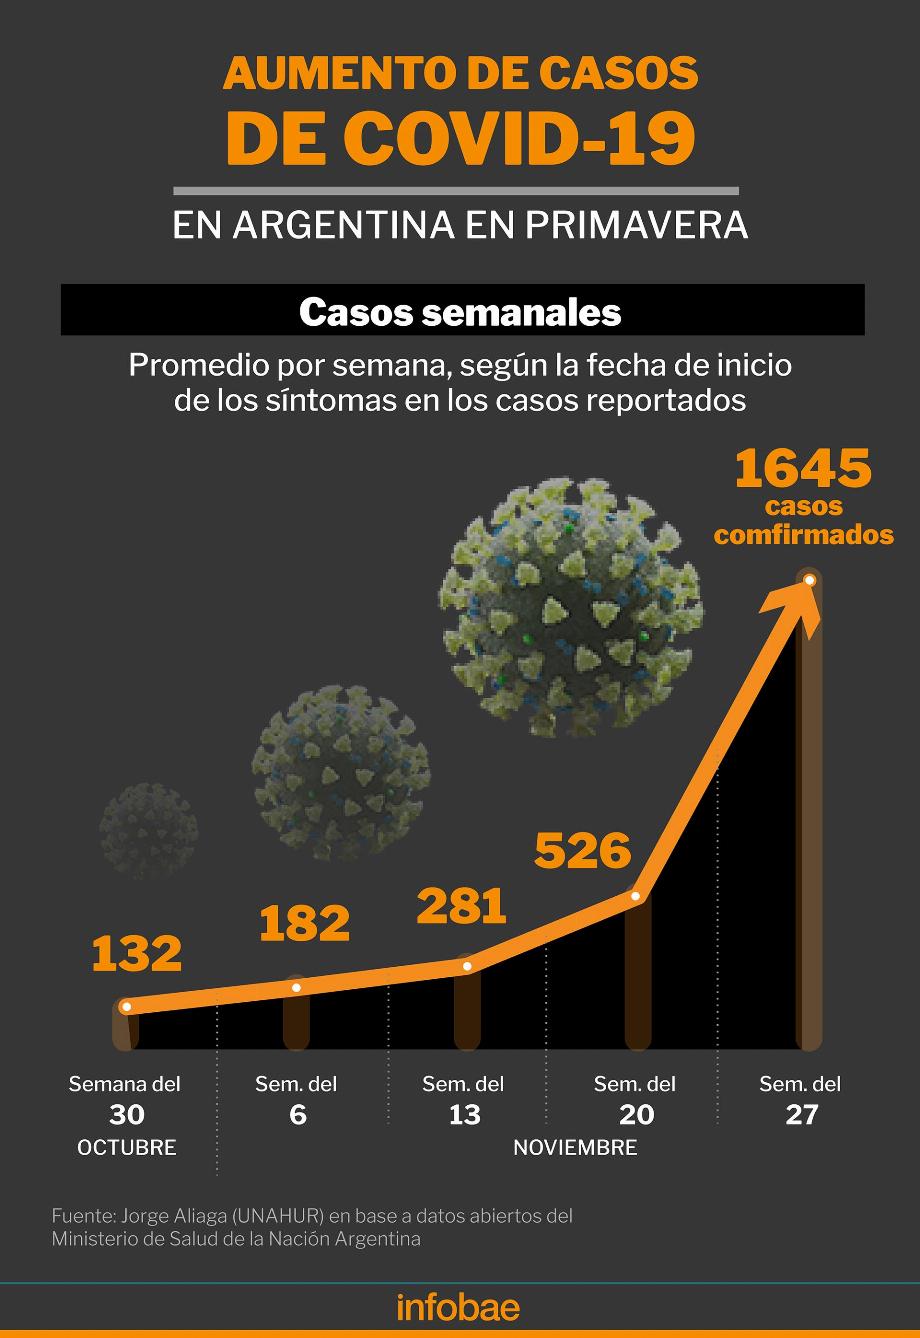 Ce graphique montre l'augmentation des cas confirmés de COVID en Argentine en moyenne hebdomadaire selon la date d'apparition des symptômes chez les personnes concernées / Dossier